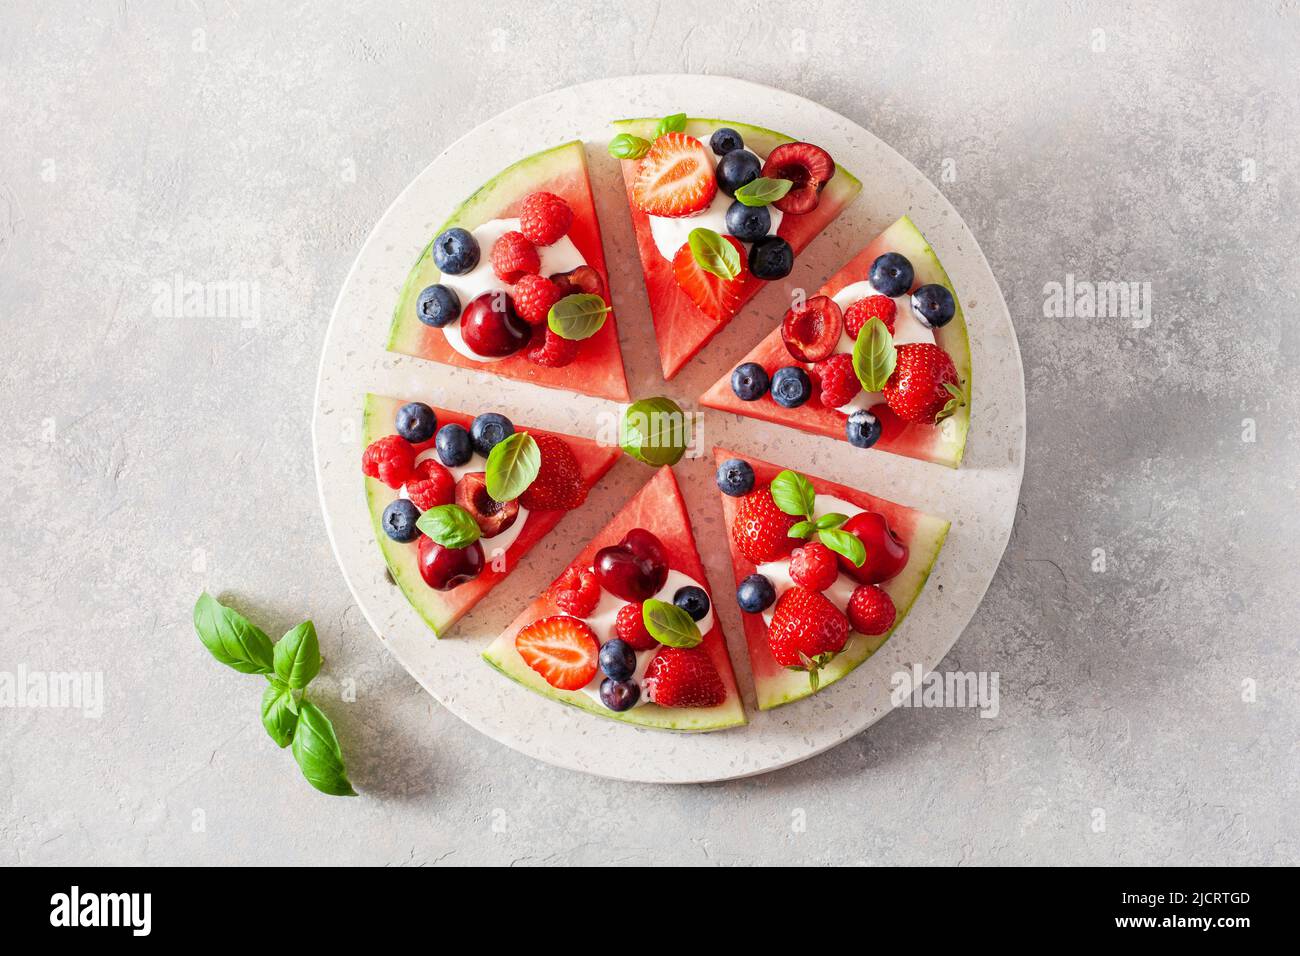 Porciones de pizza de sandía con yogur y bayas, postre de verano Foto de stock